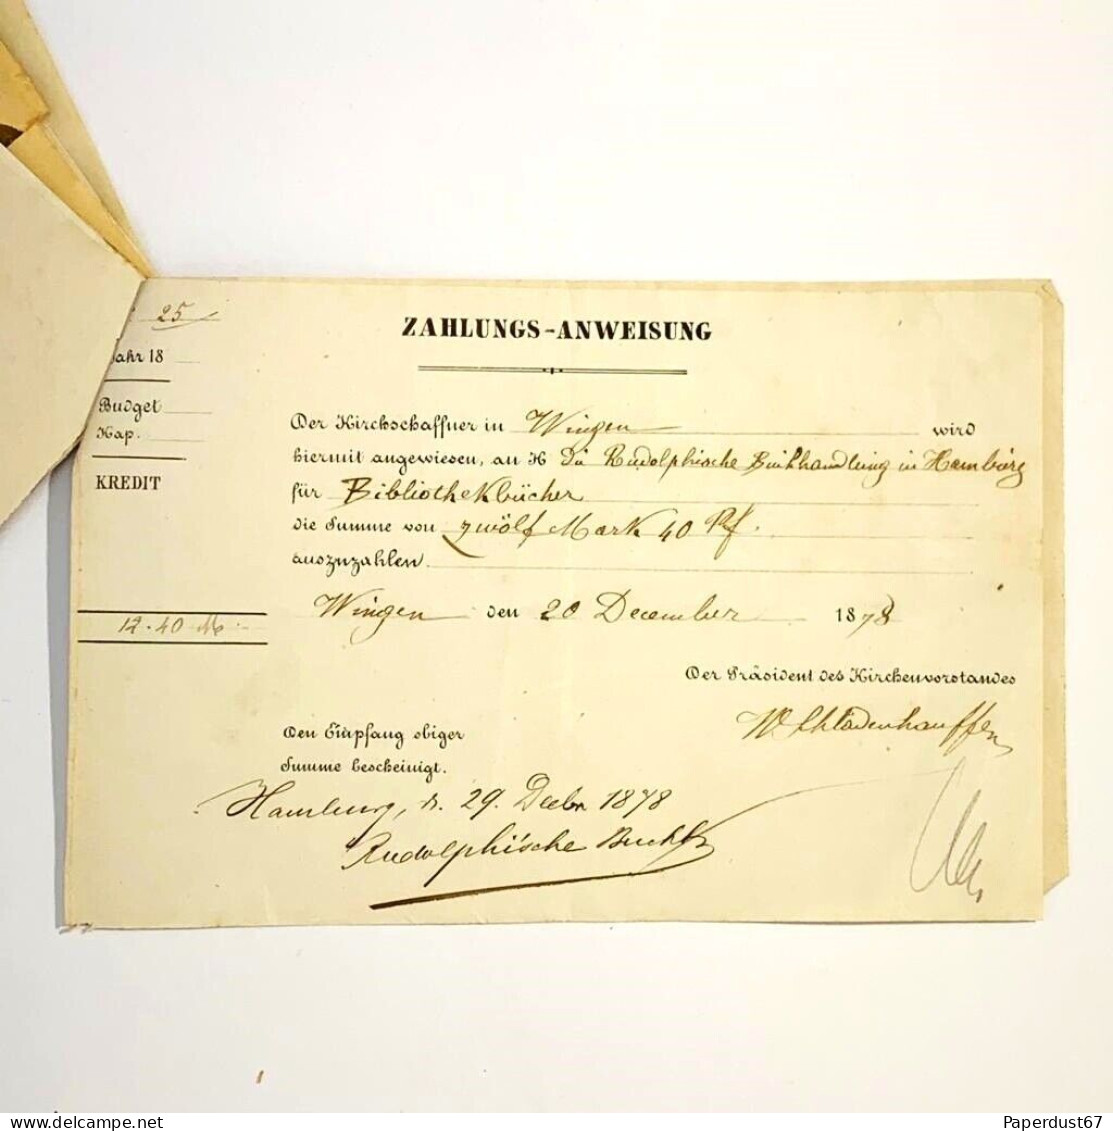 Zahlungsanweisung Money Orders Lot Of 30+ Antique Money Order 1878 Ephemera